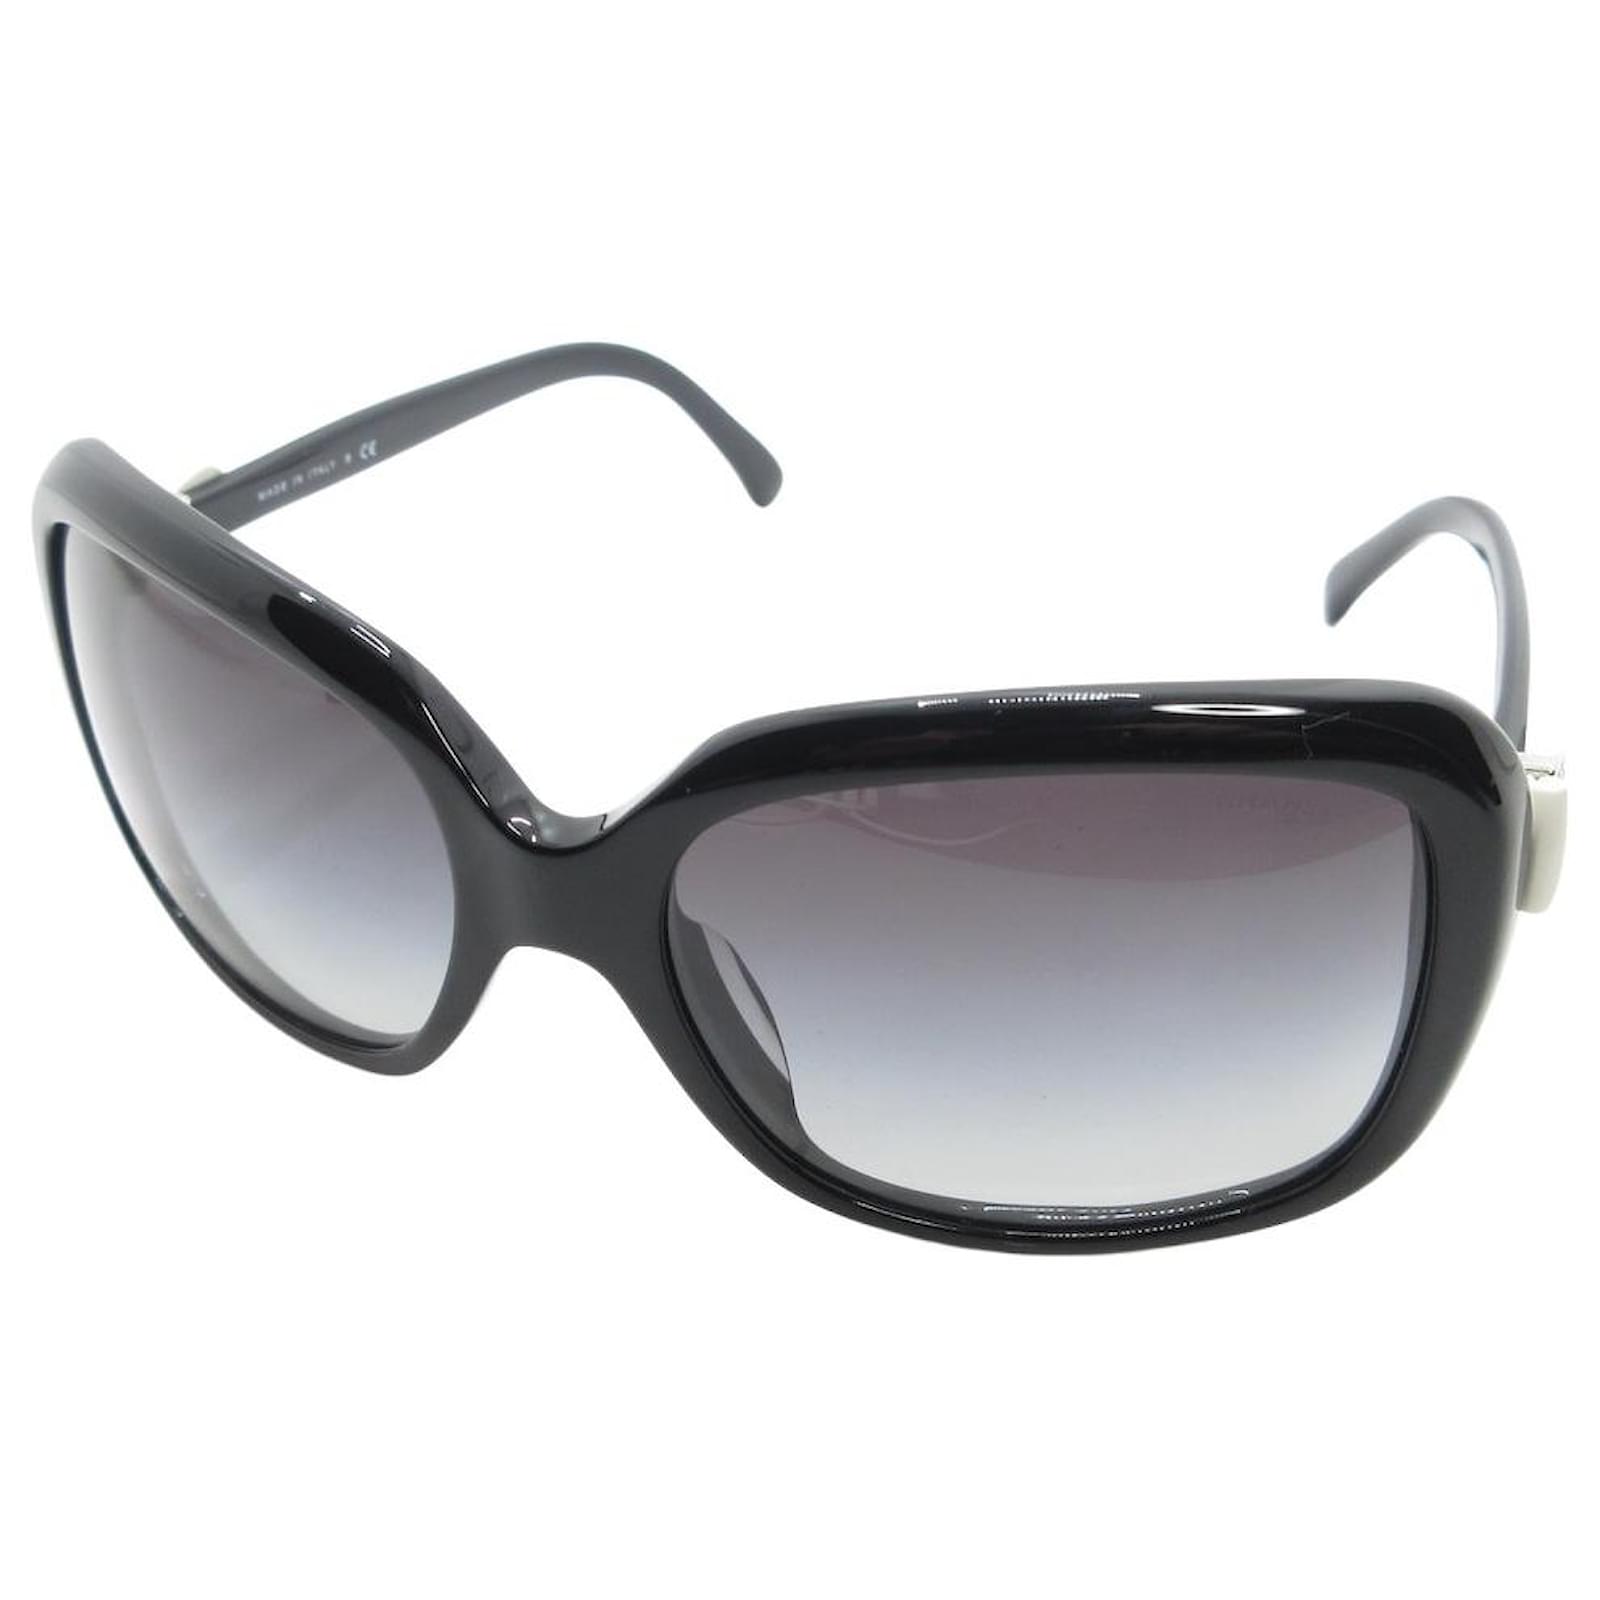 Sunglasses Chanel Black in Plastic - 25068905